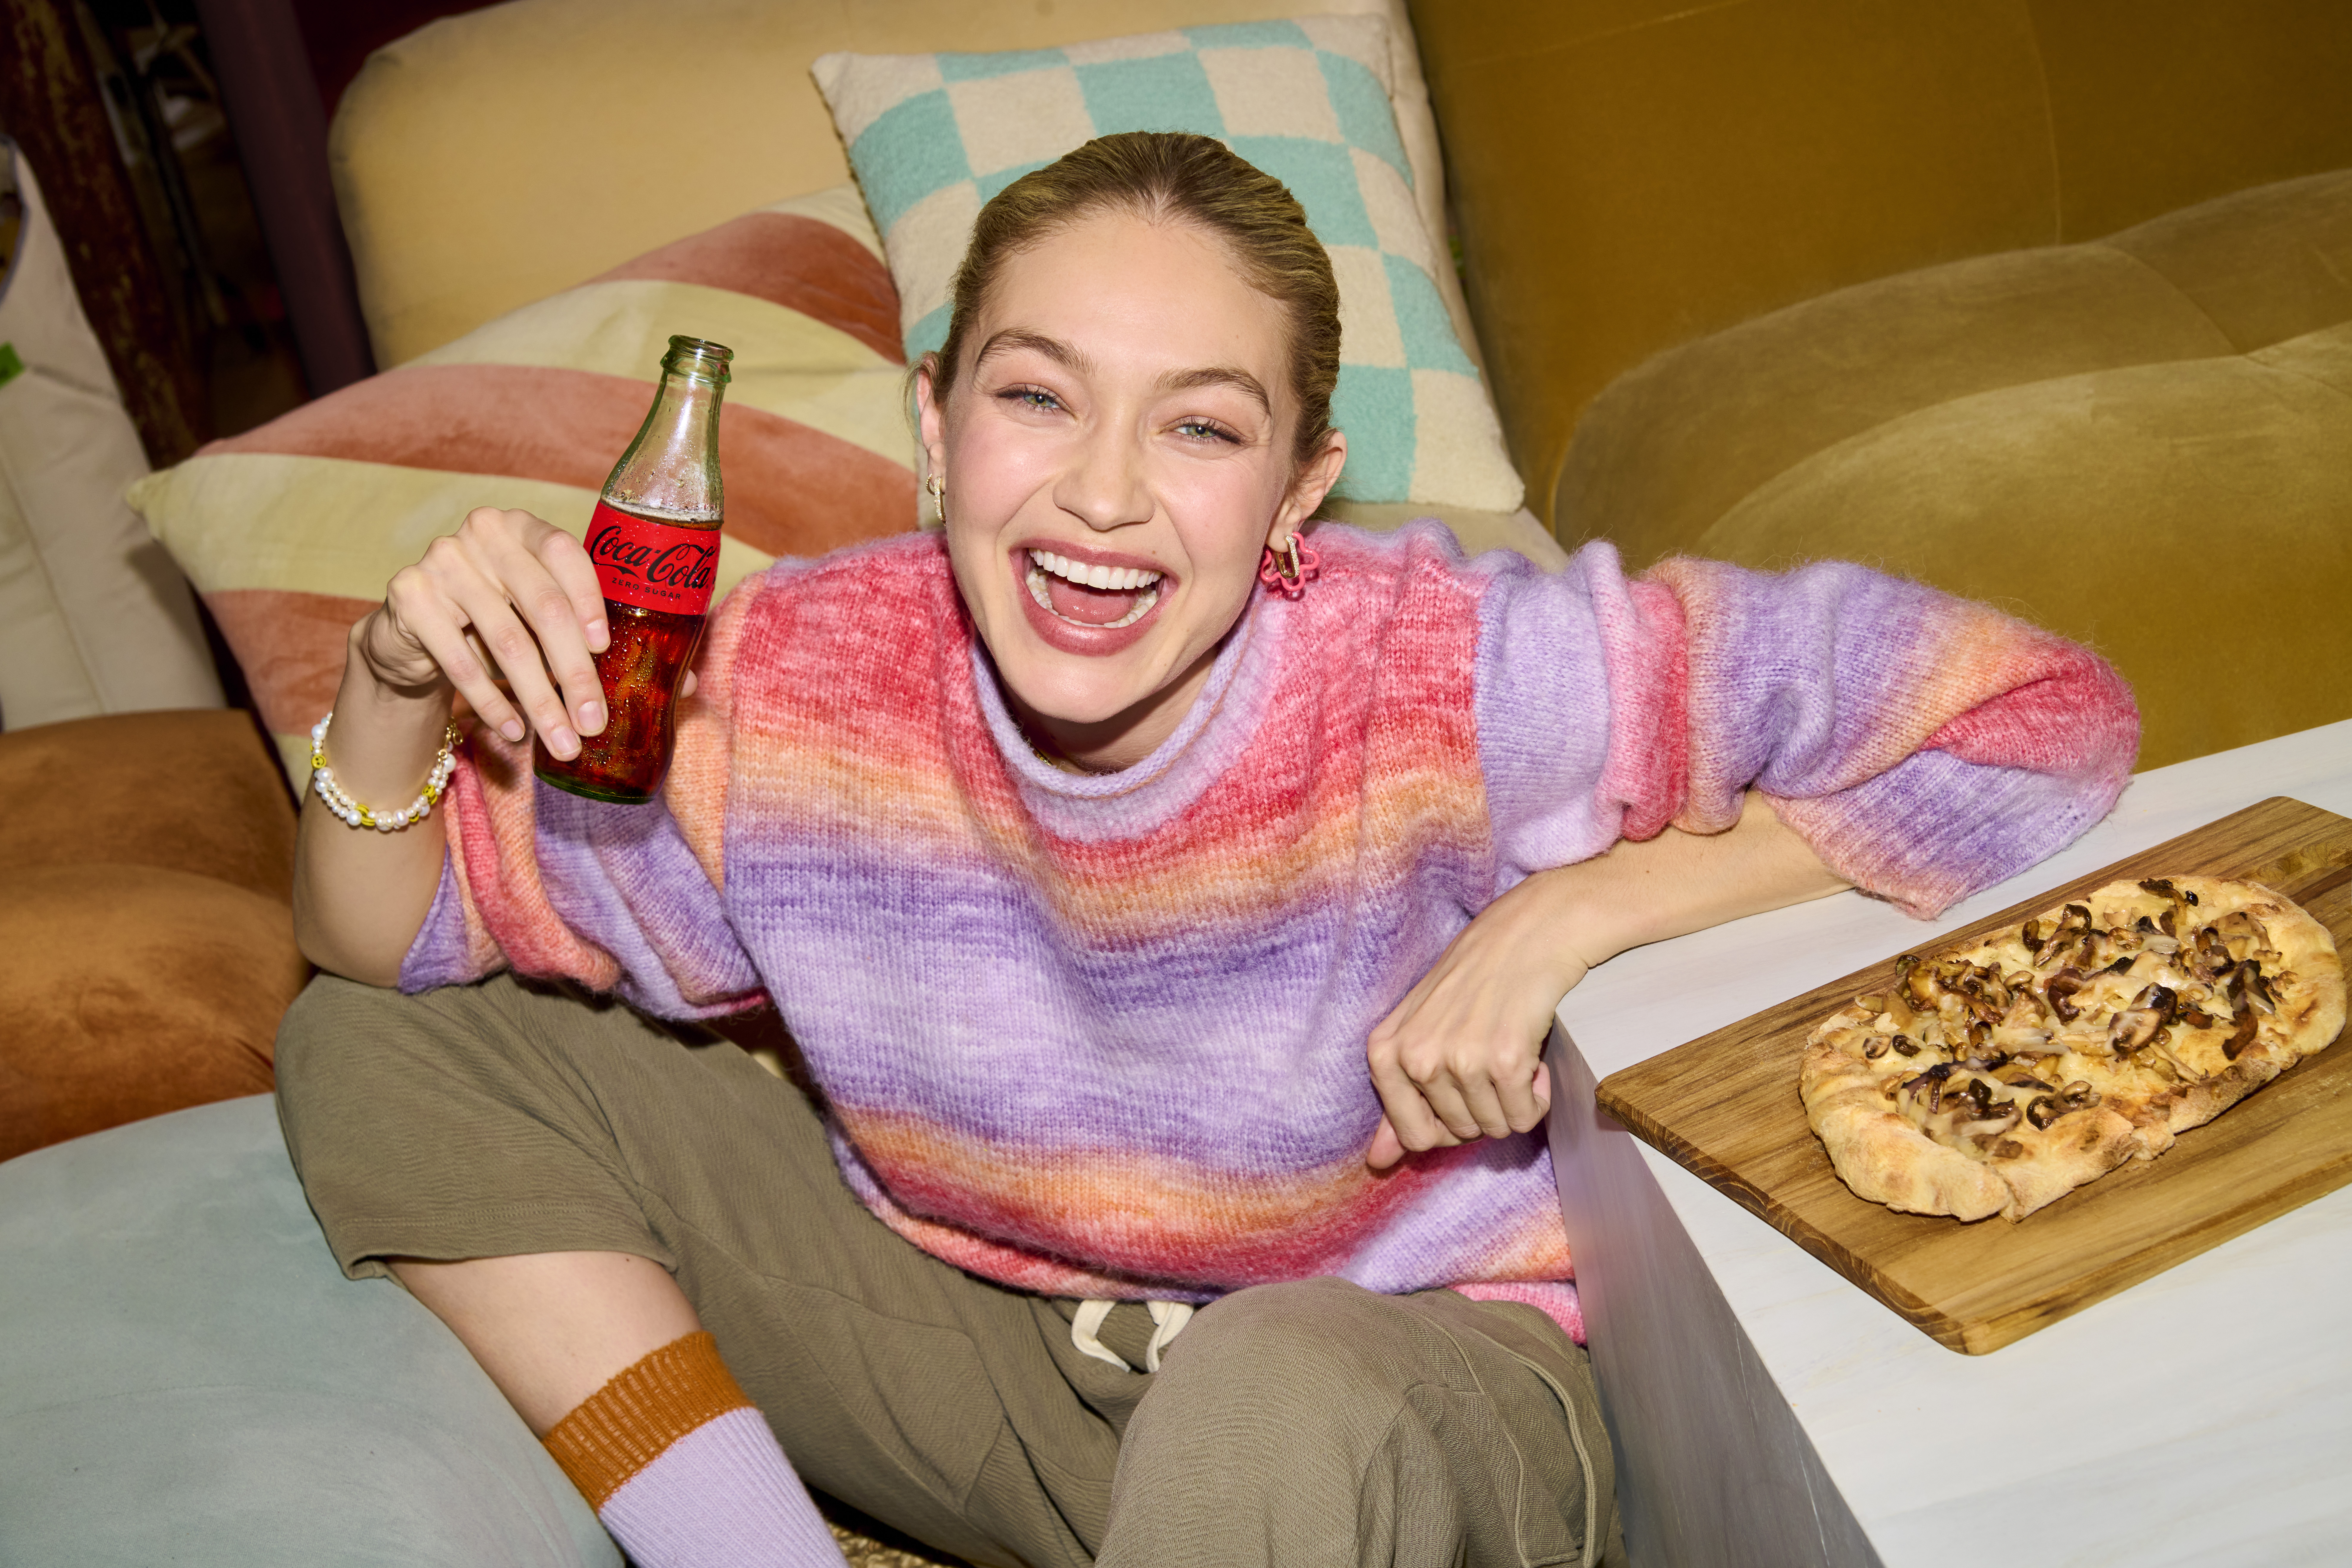 Nuevo: Coca-Cola lanza a nivel global “una receta mágica” y celebra la  conexión que se genera al reunirse alrededor de una mesa | Adlatina